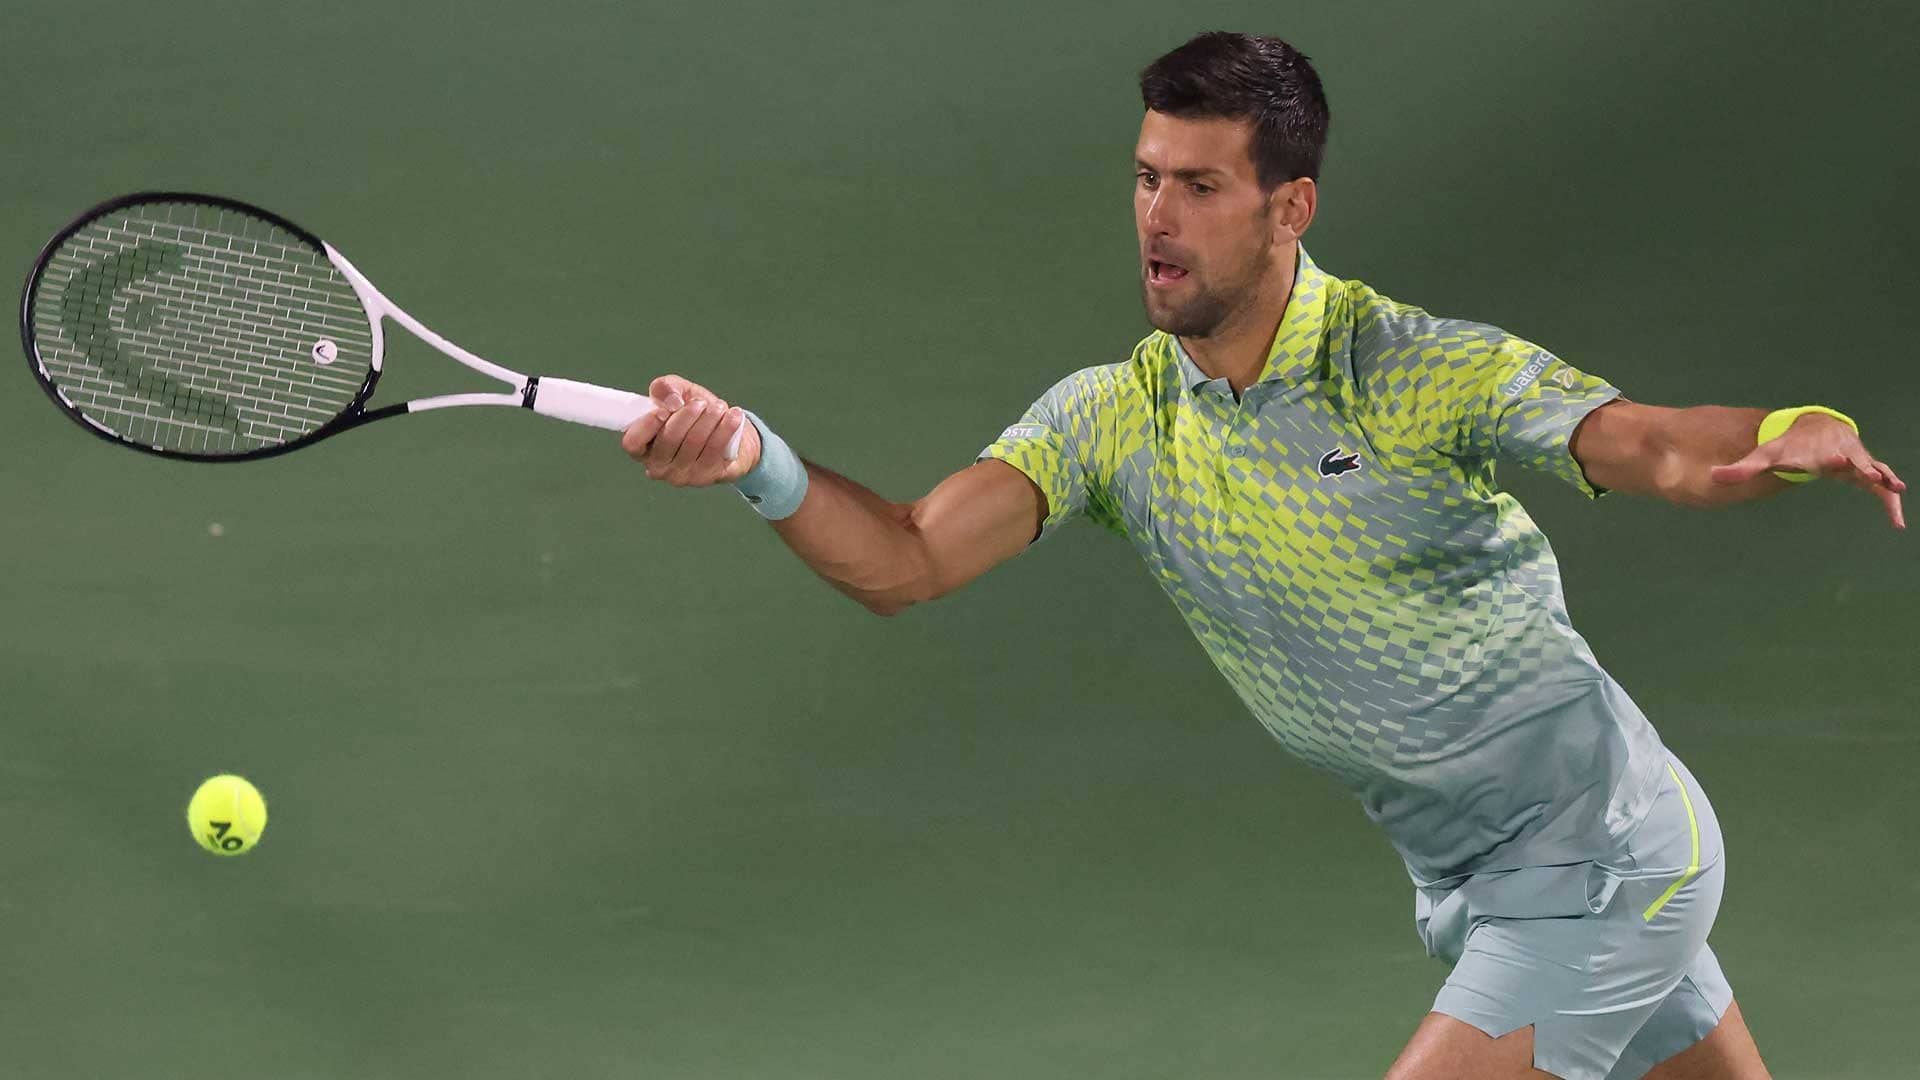 Dubai: Novak downs Griekspoor to progress into quarter-finals